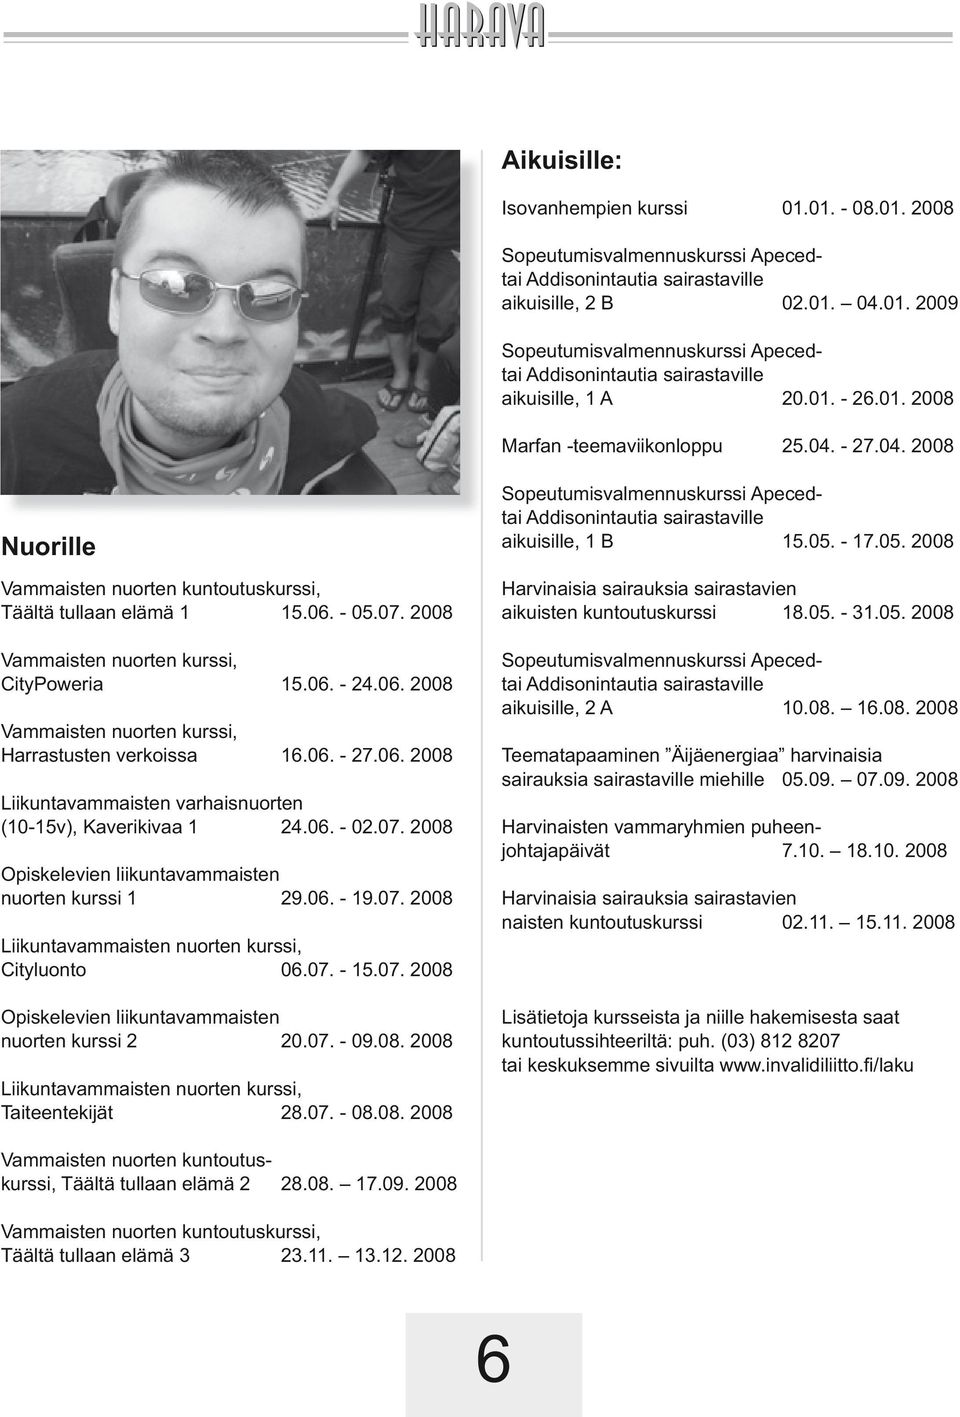 06. 2008 Vammaisten nuorten kurssi, Harrastusten verkoissa 16.06. - 27.06. 2008 Liikuntavammaisten varhaisnuorten (10-15v), Kaverikivaa 1 24.06. - 02.07.